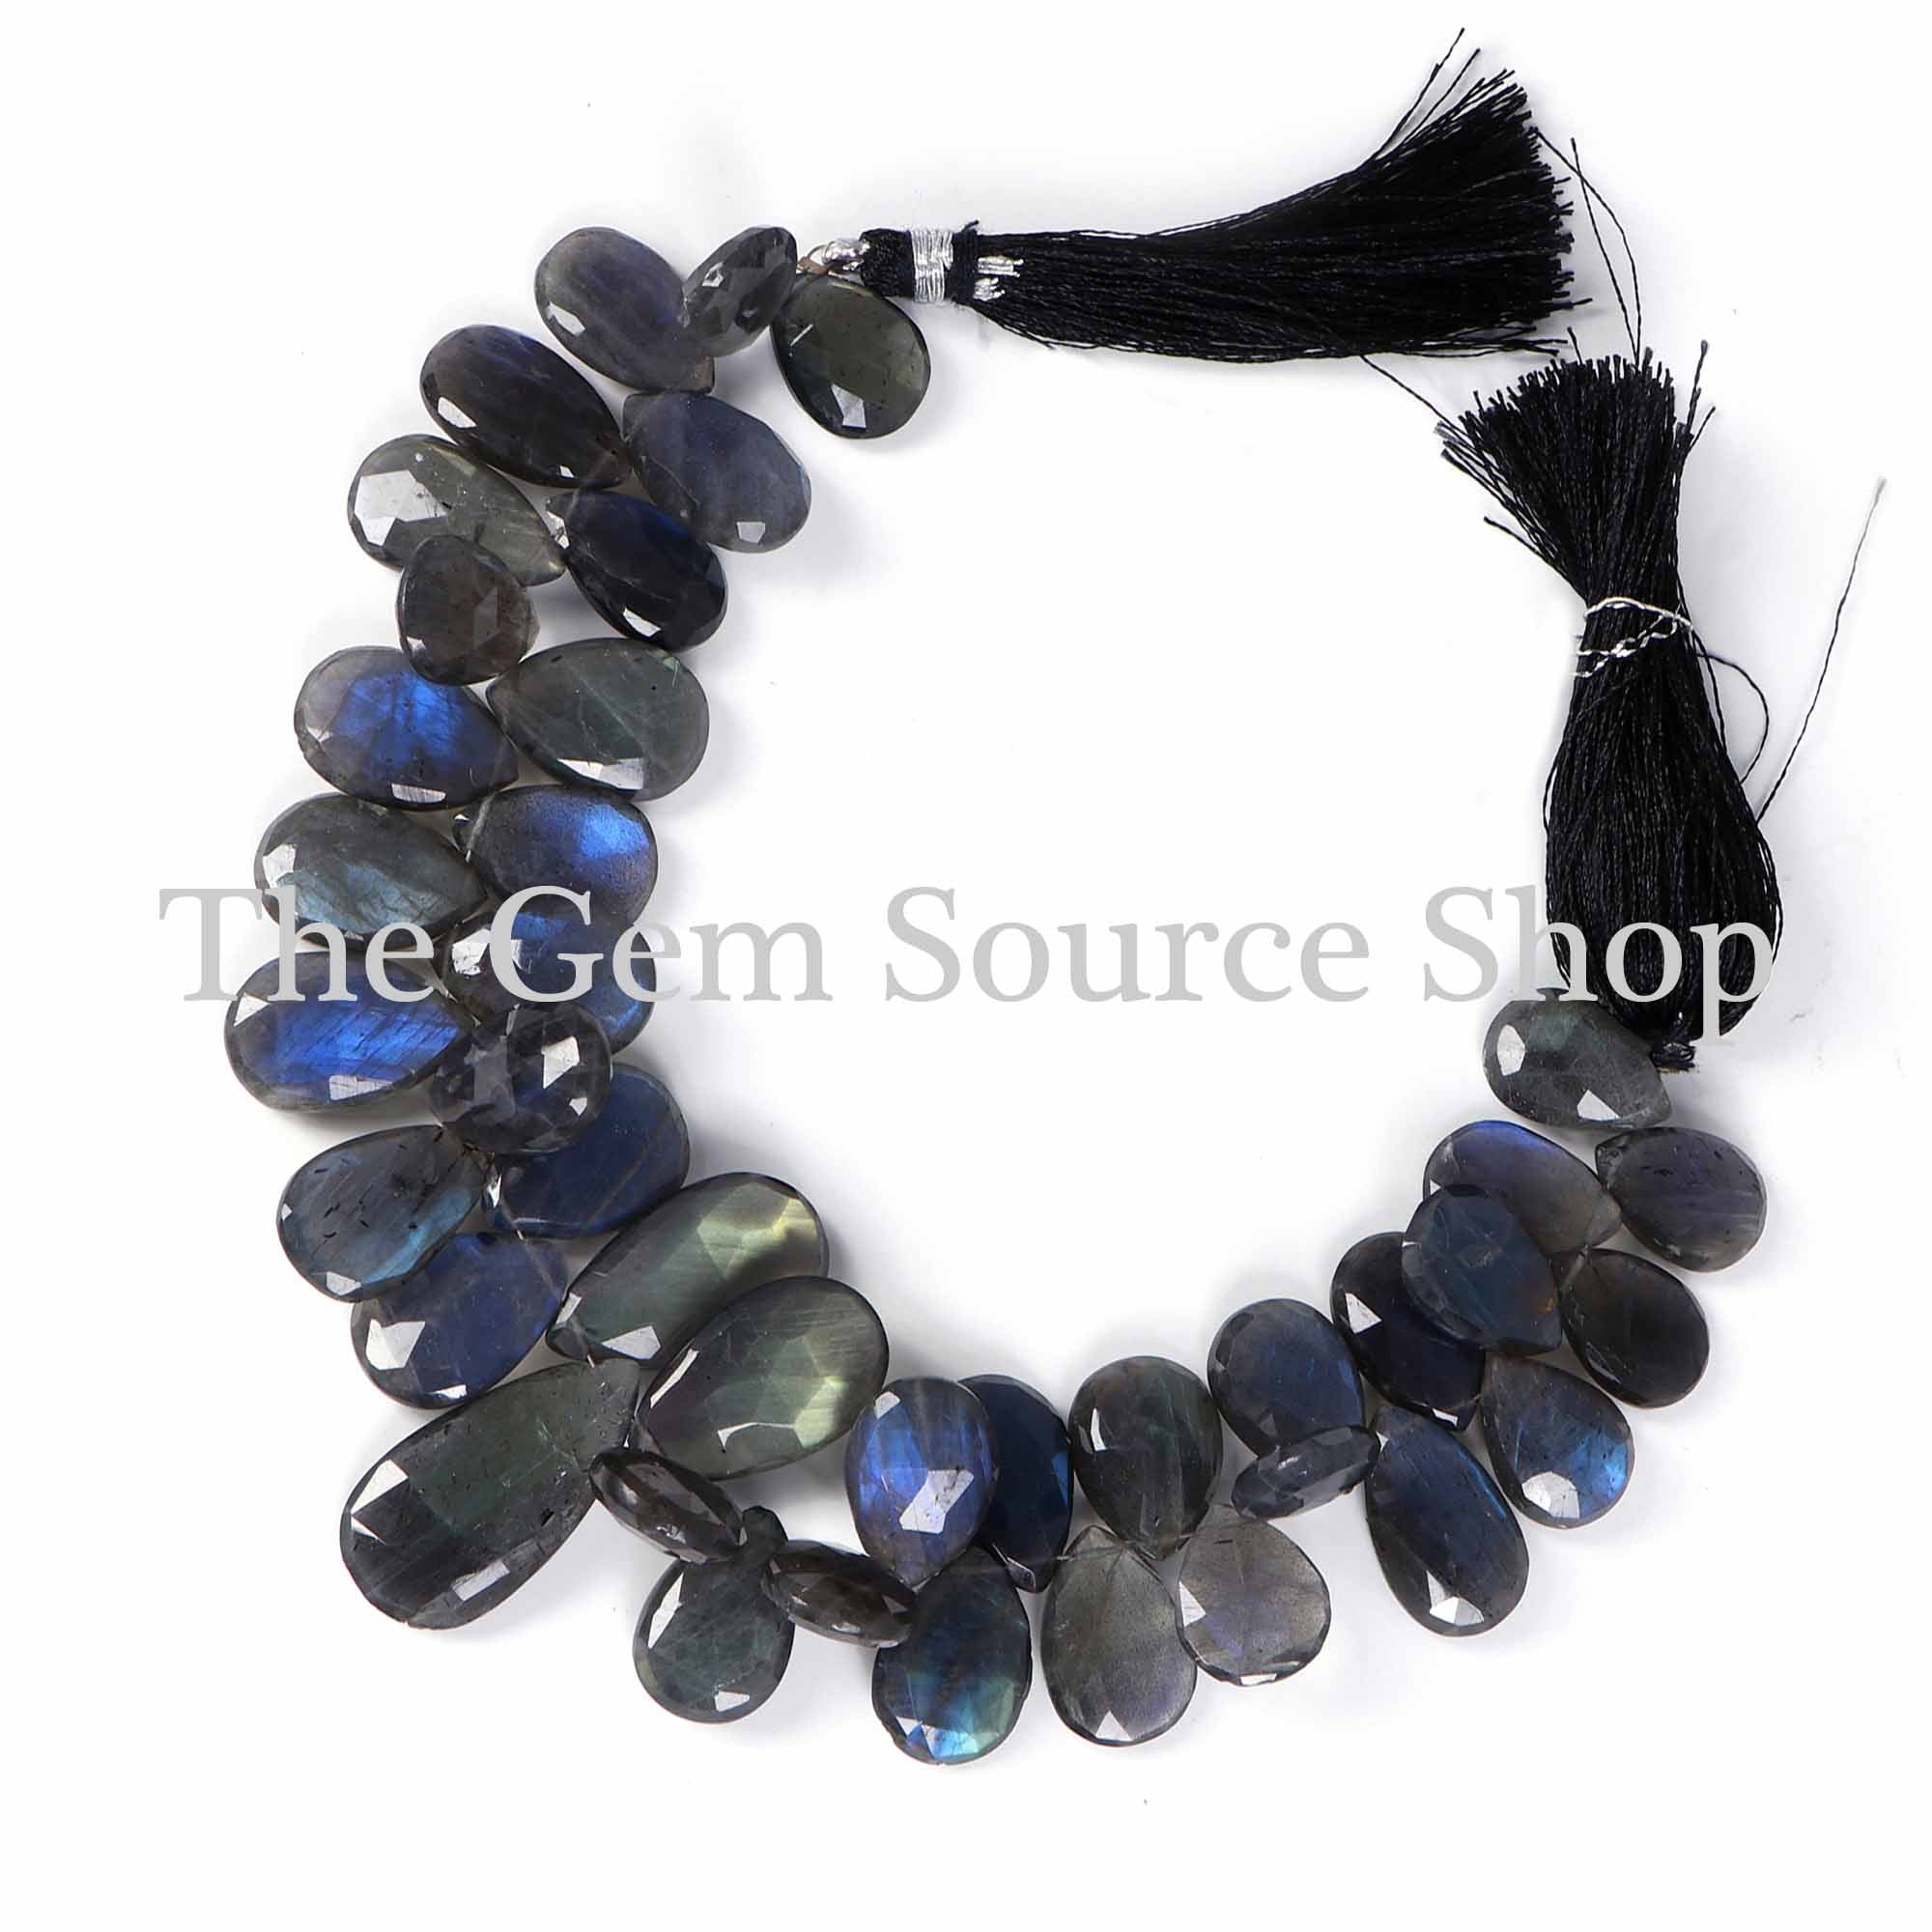 Big Size Labradorite Beads, Labradorite Faceted Pear Beads, Labradorite Gemstone Beads